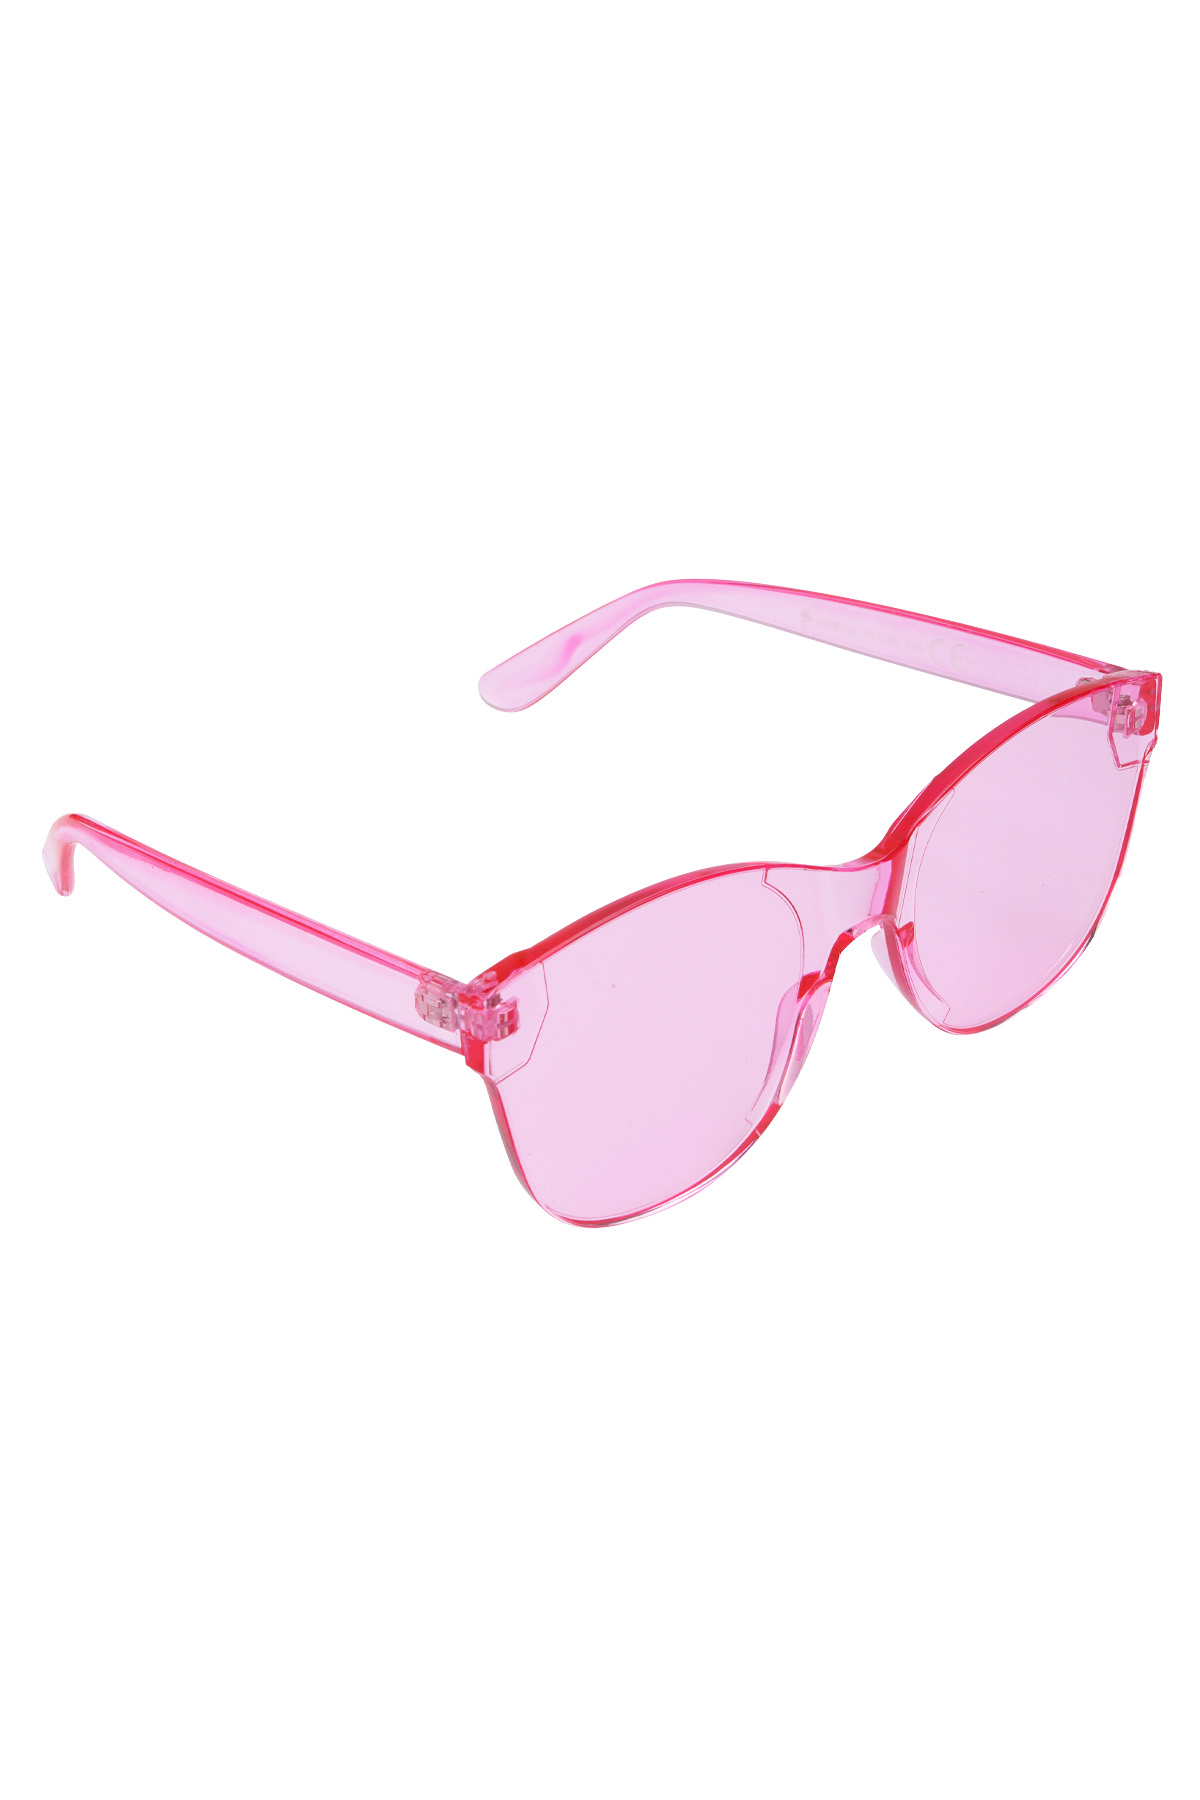 Occhiali da sole alla moda monocolore: rosa